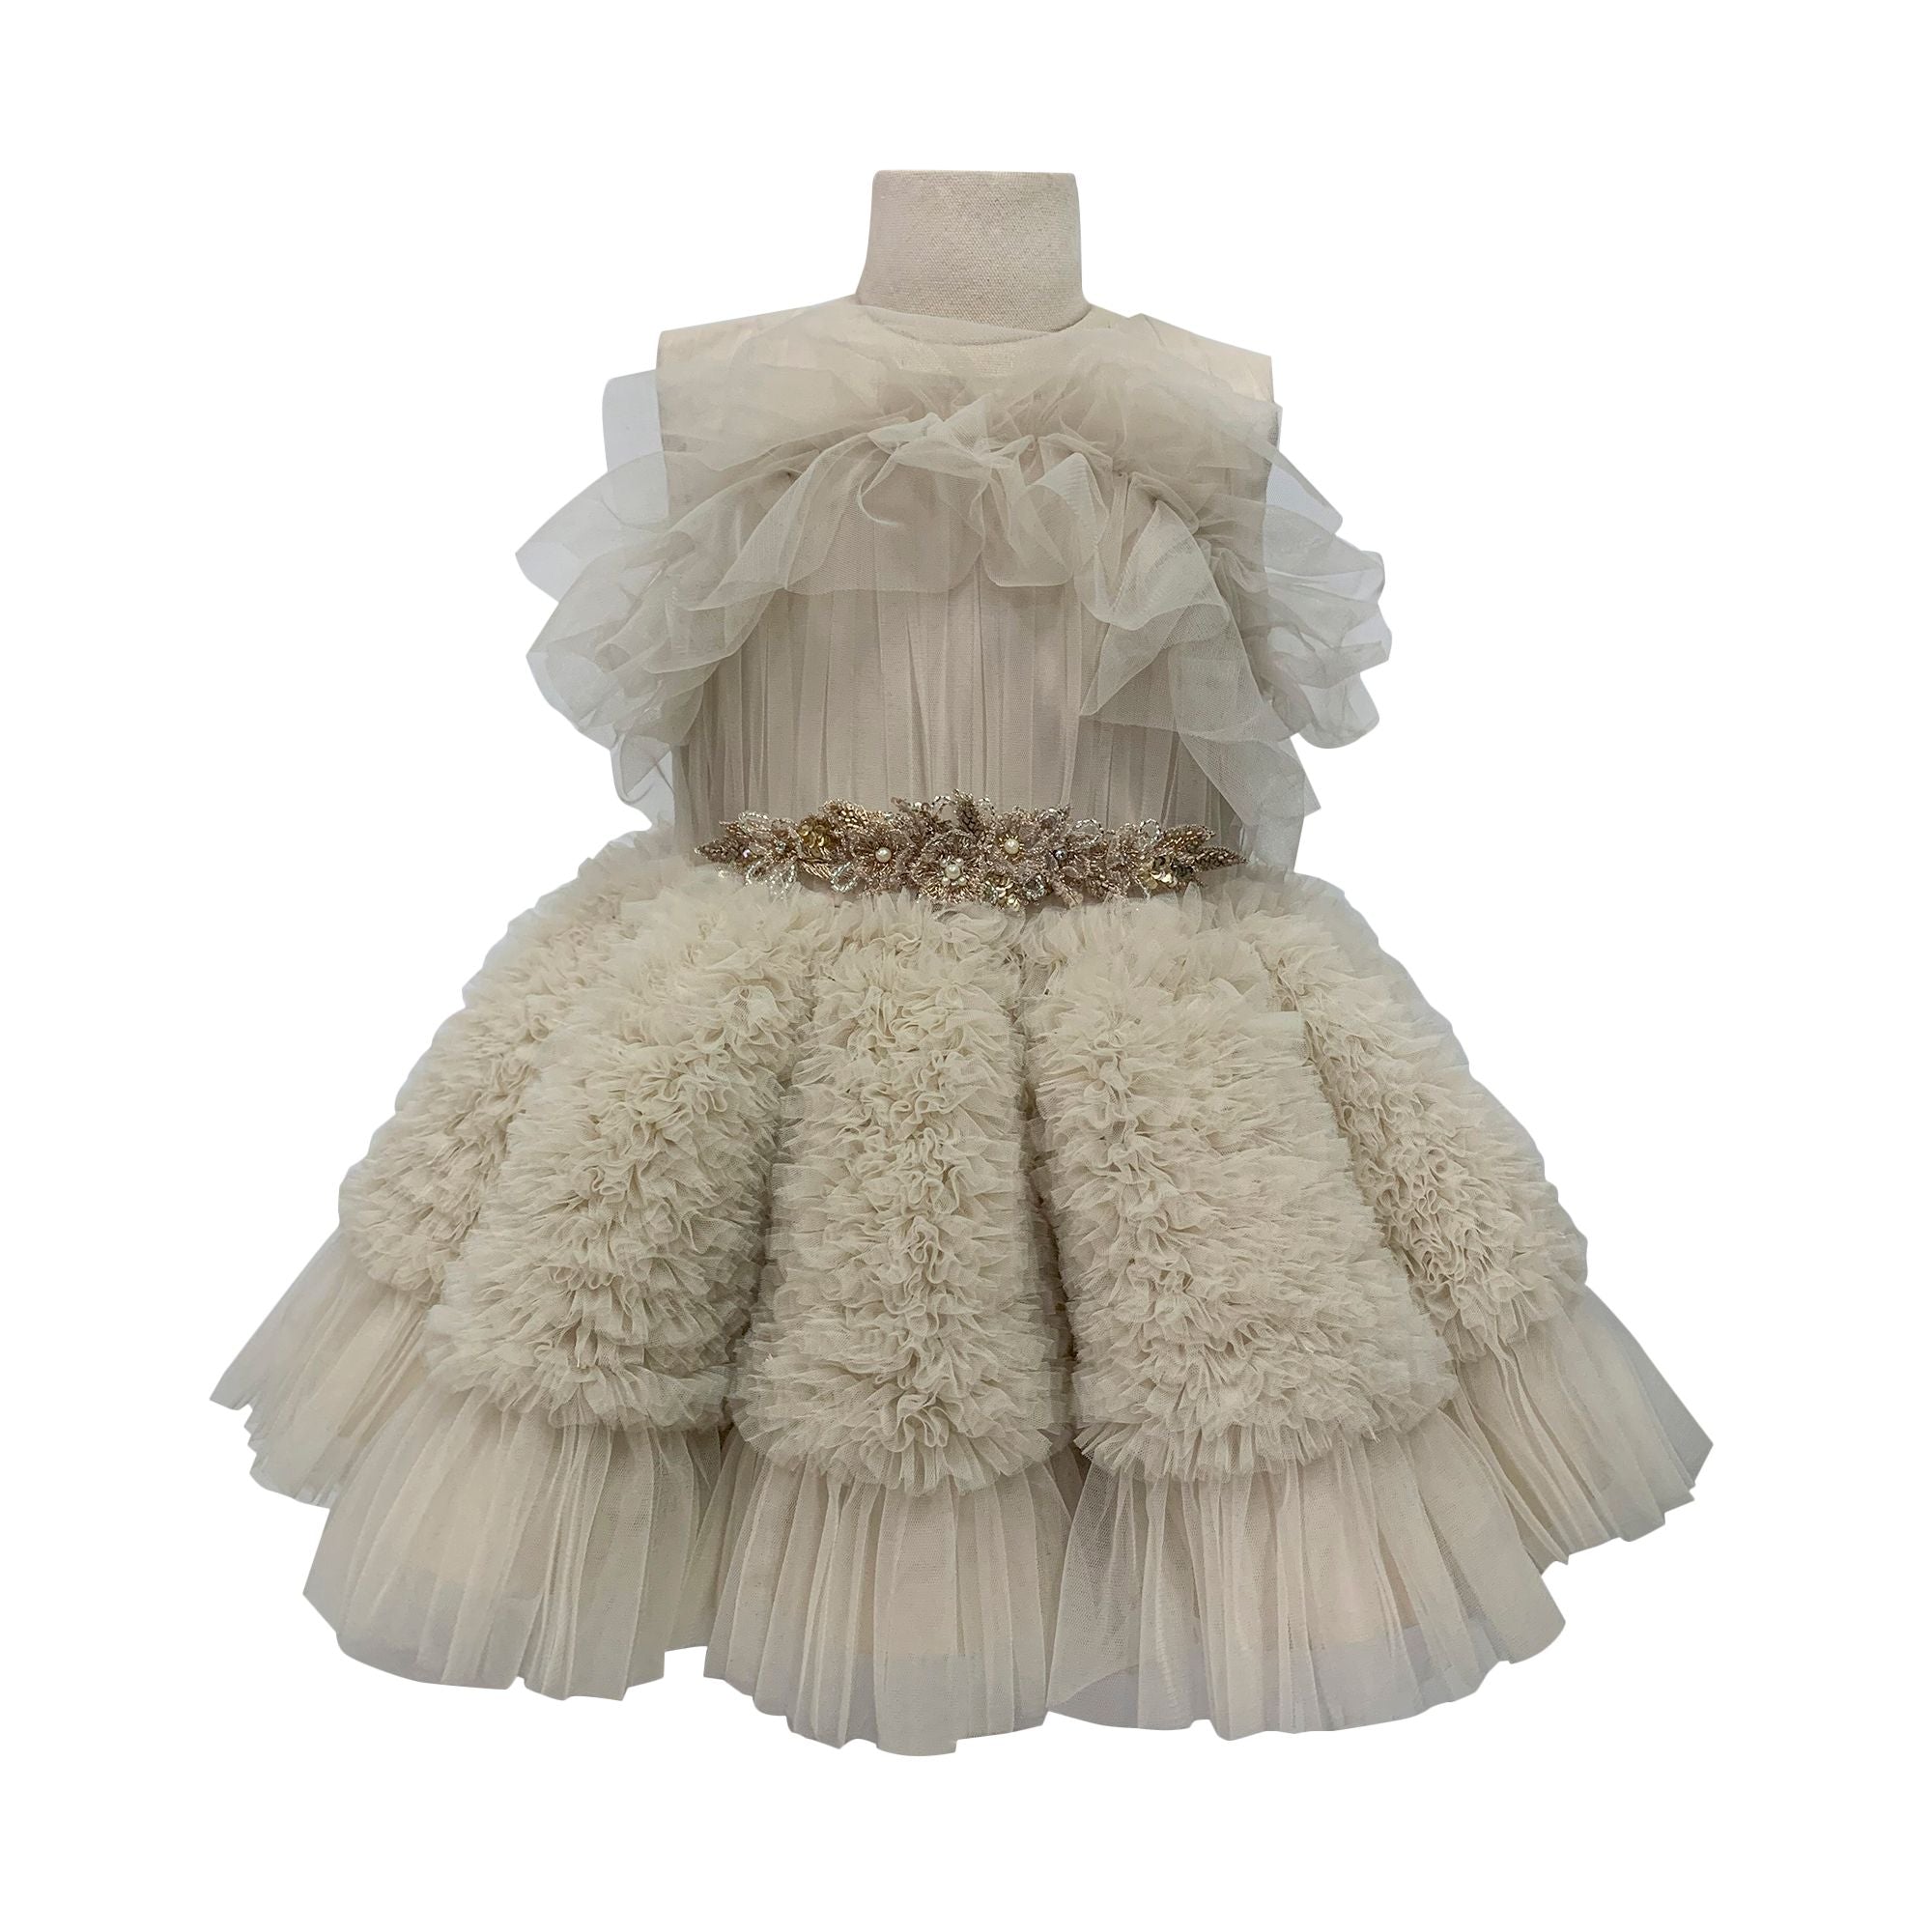 The Embellished Ariel Tulle Dress (Beige)